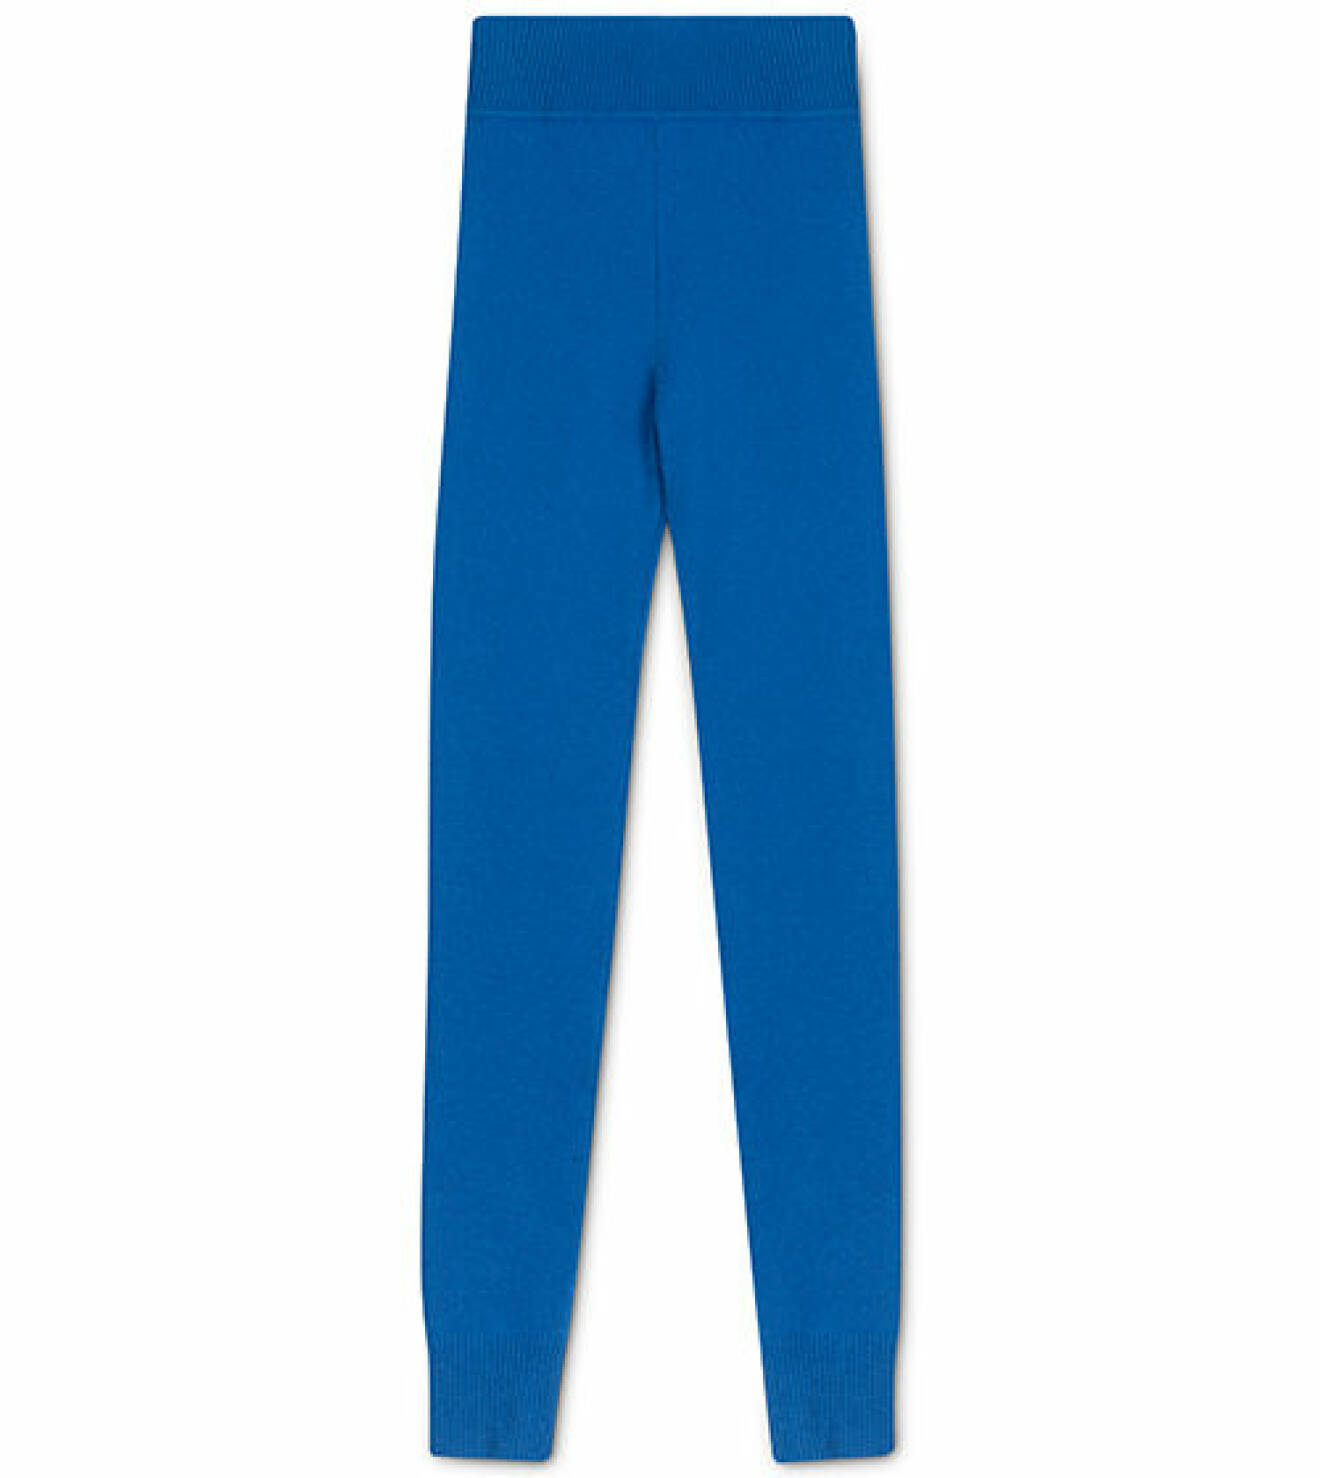 softgoat- blå leggings